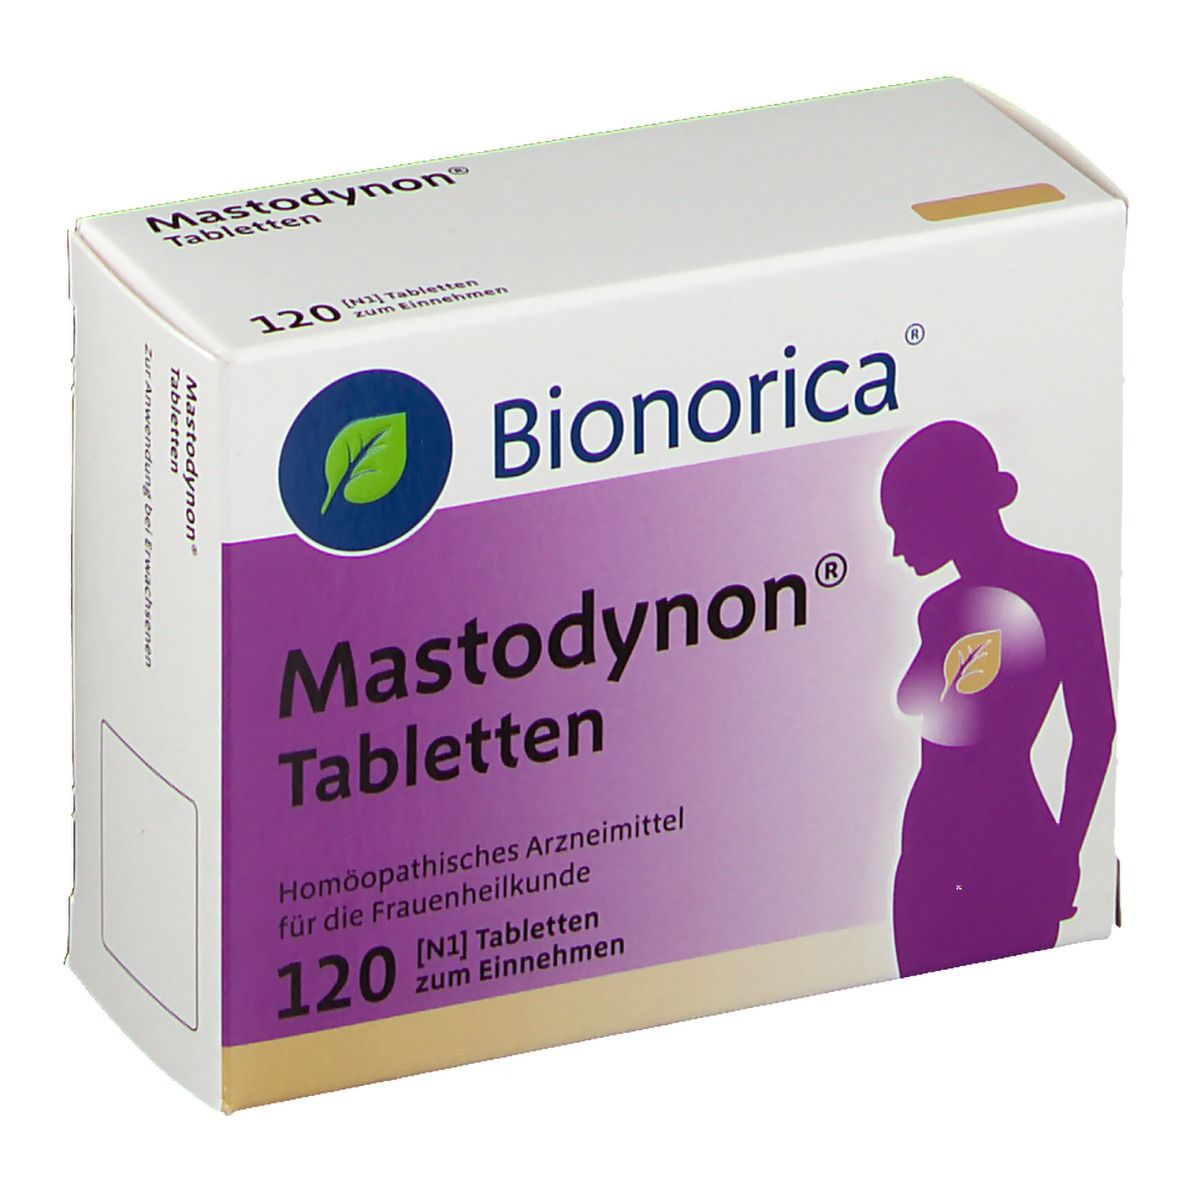 Mastodynon® Tabletten